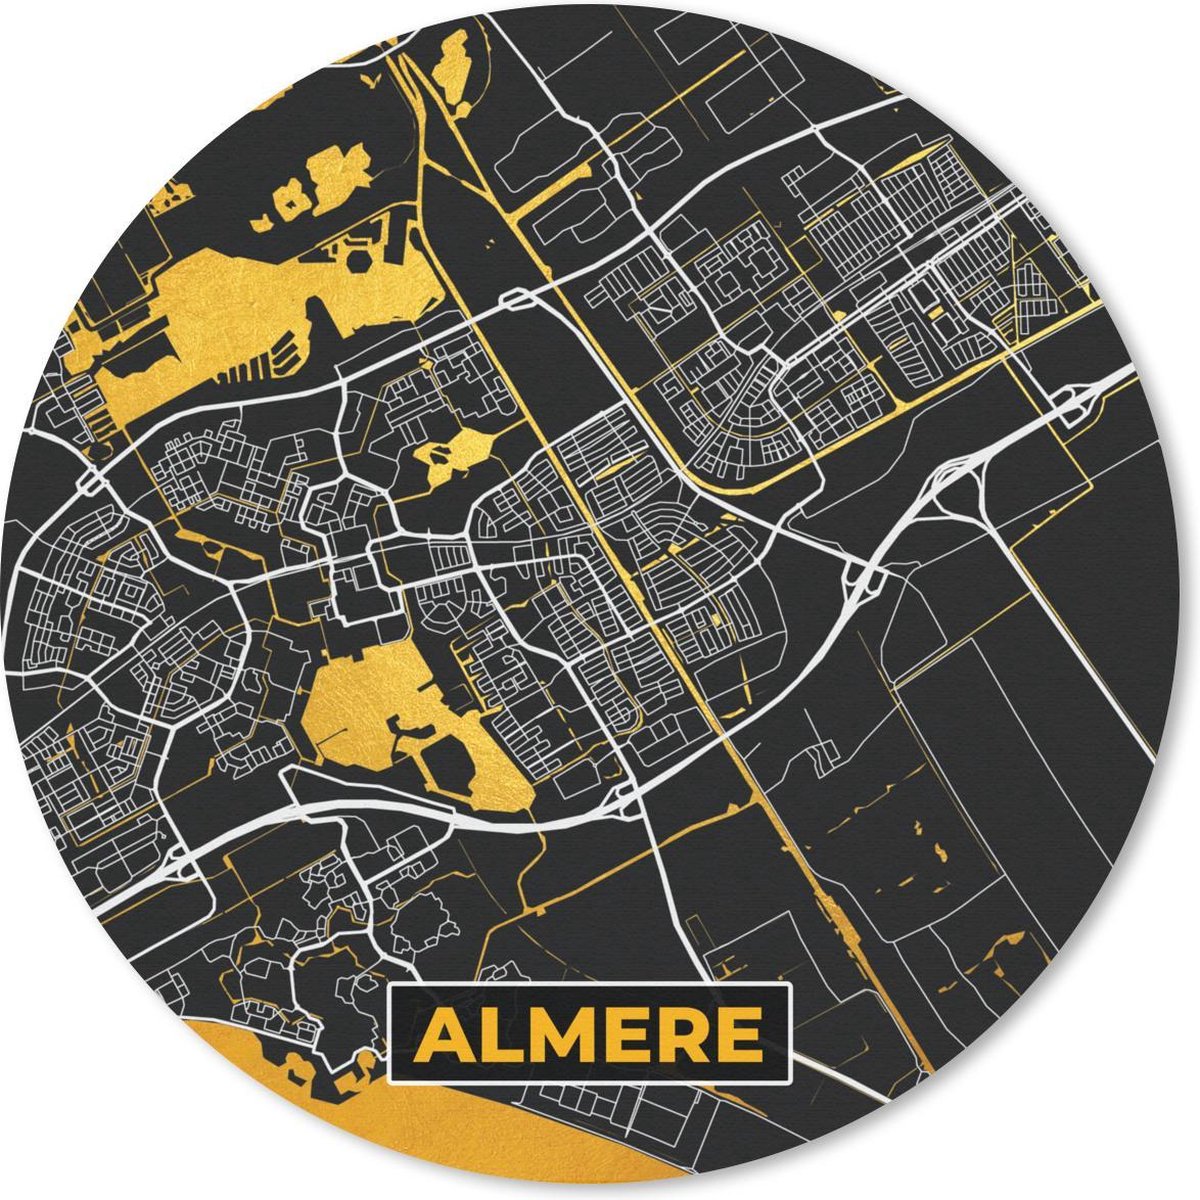 Muismat - Mousepad - Rond - Stadskaart - Almere - Goud - Zwart - 50x50 cm - Ronde muismat - Plattegrond